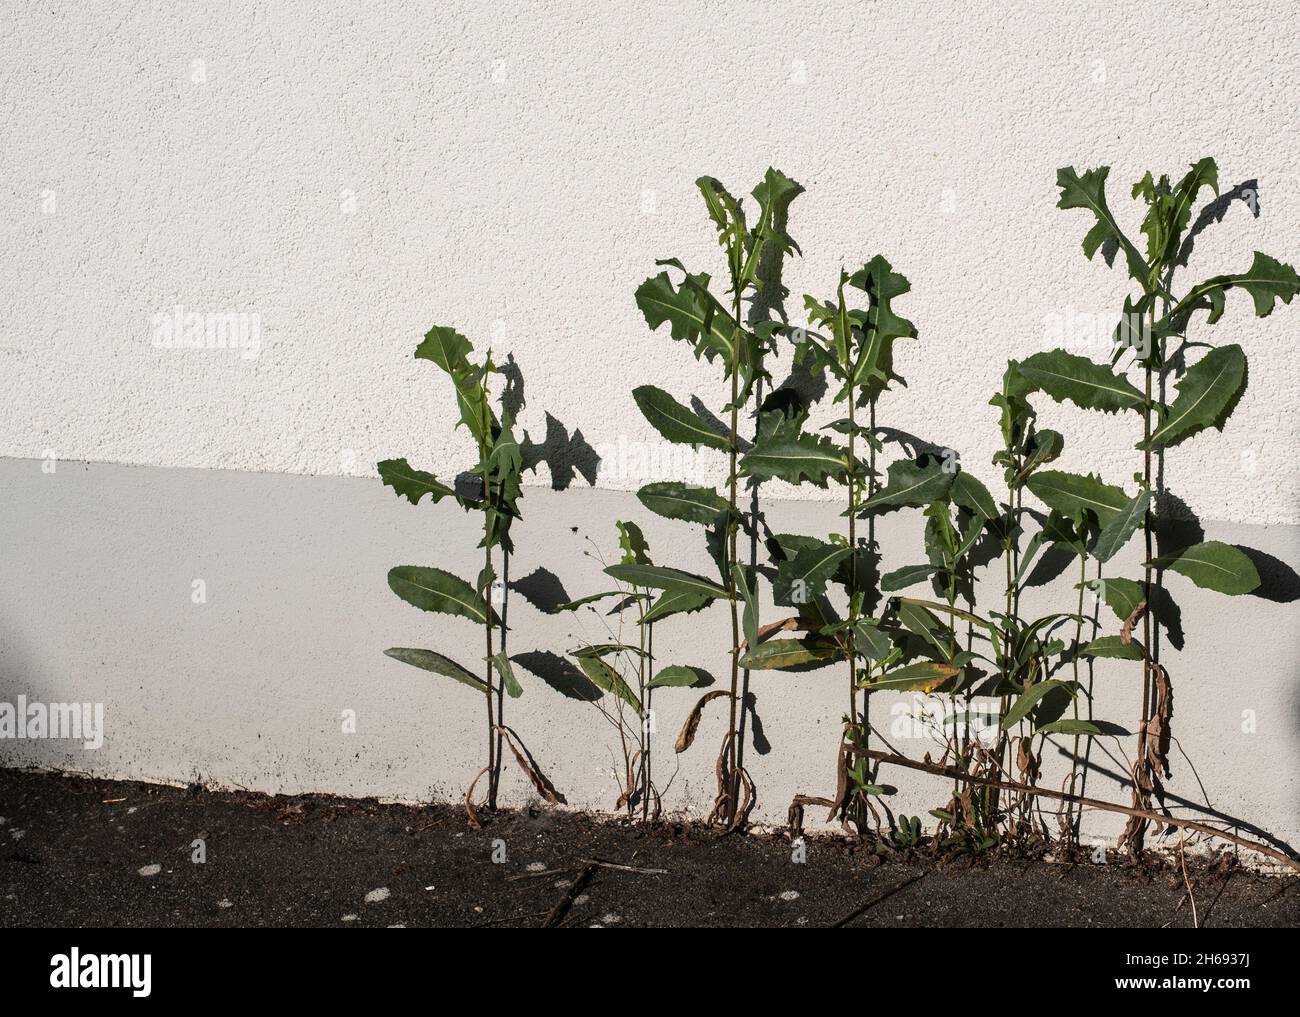 las hojas verdes de las plantas de barba de dos días proyectan sombras en una fachada Foto de stock